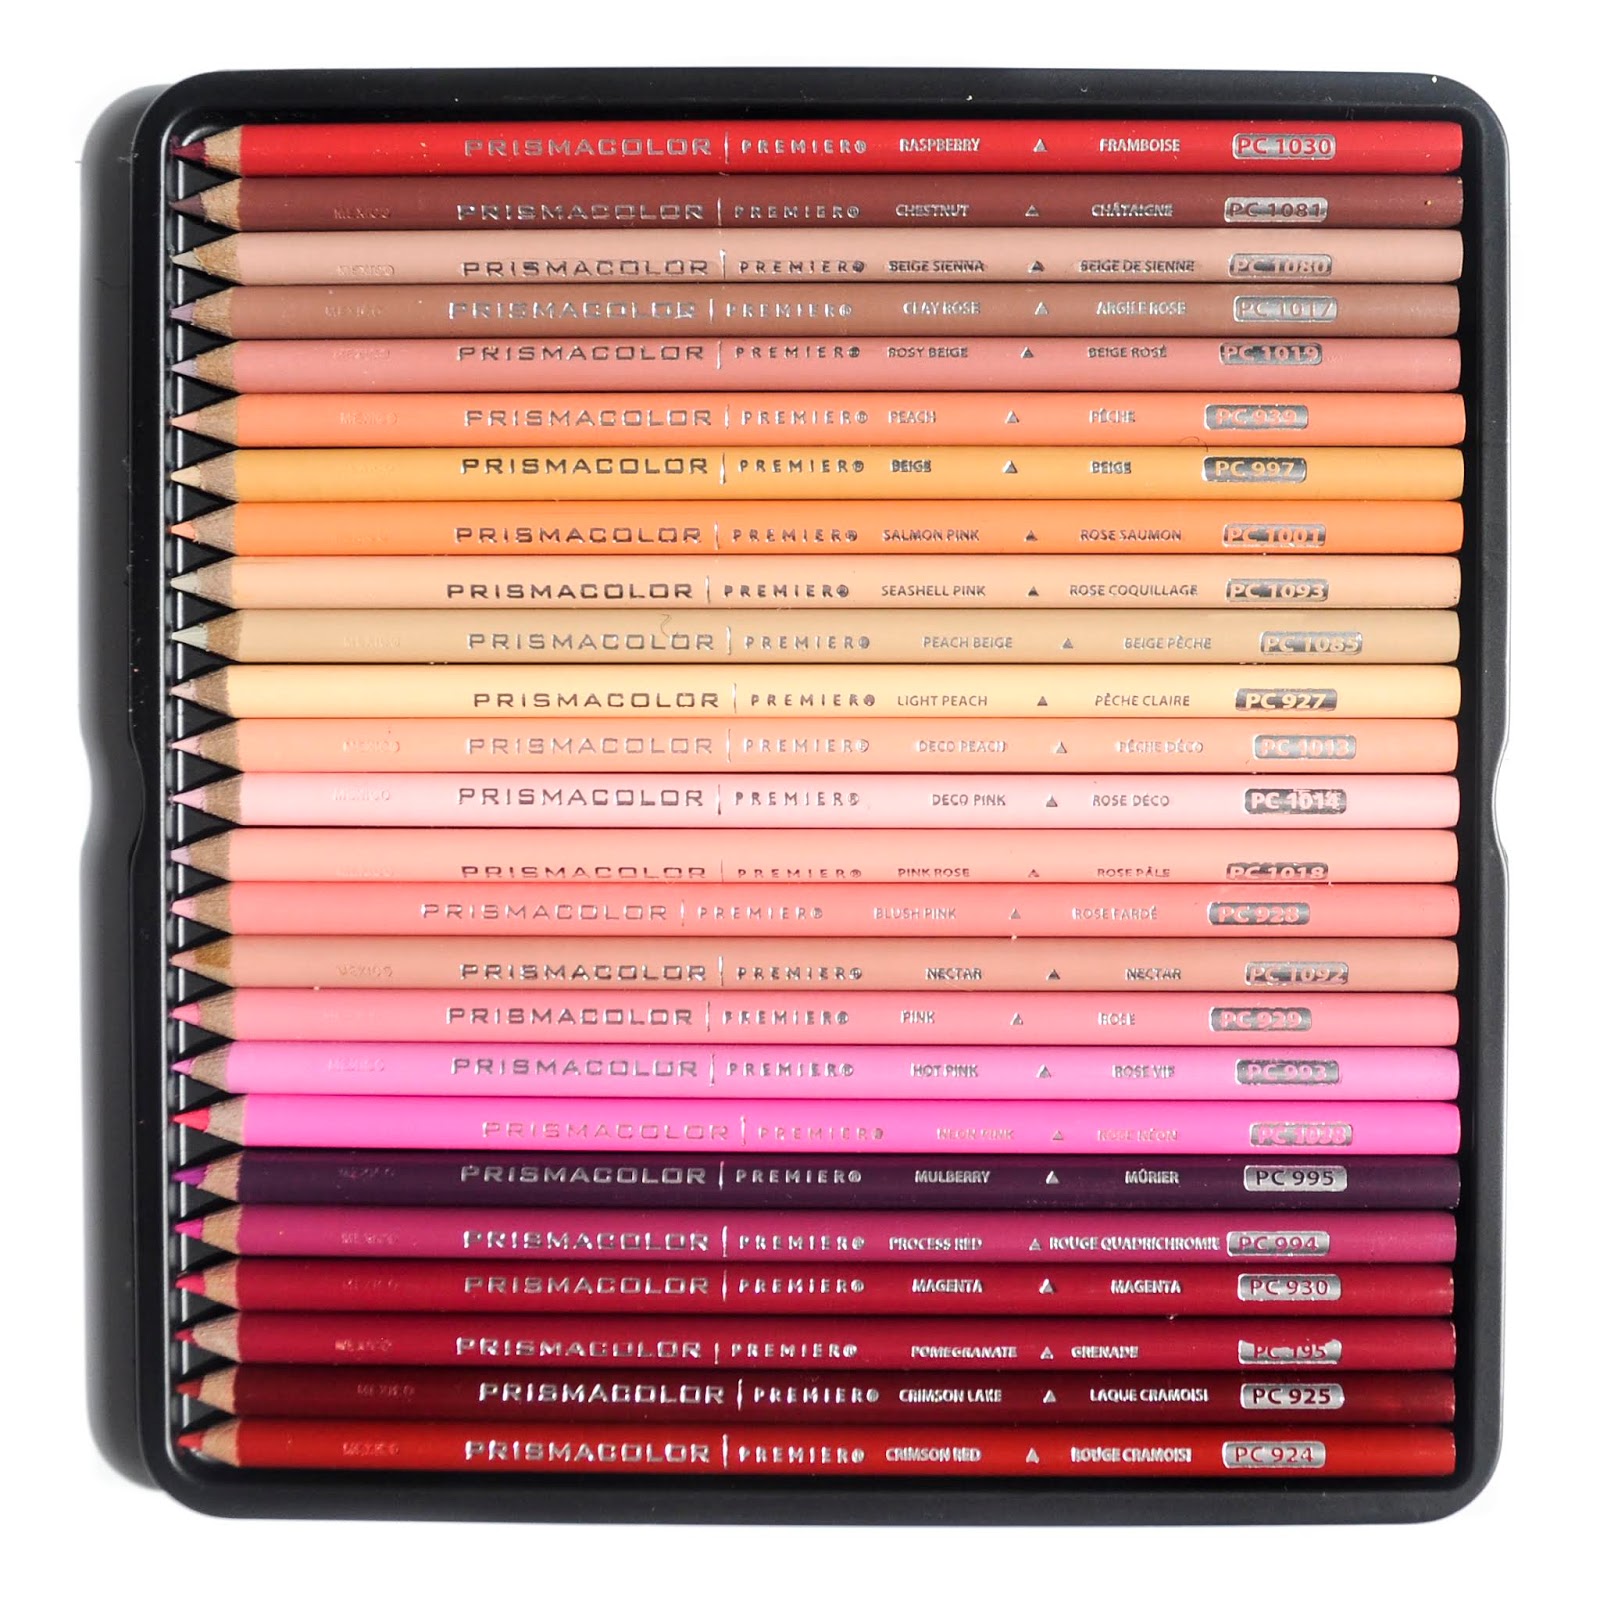 Prismacolor Premier Colored Pencils - Soft Core, 150 Pack